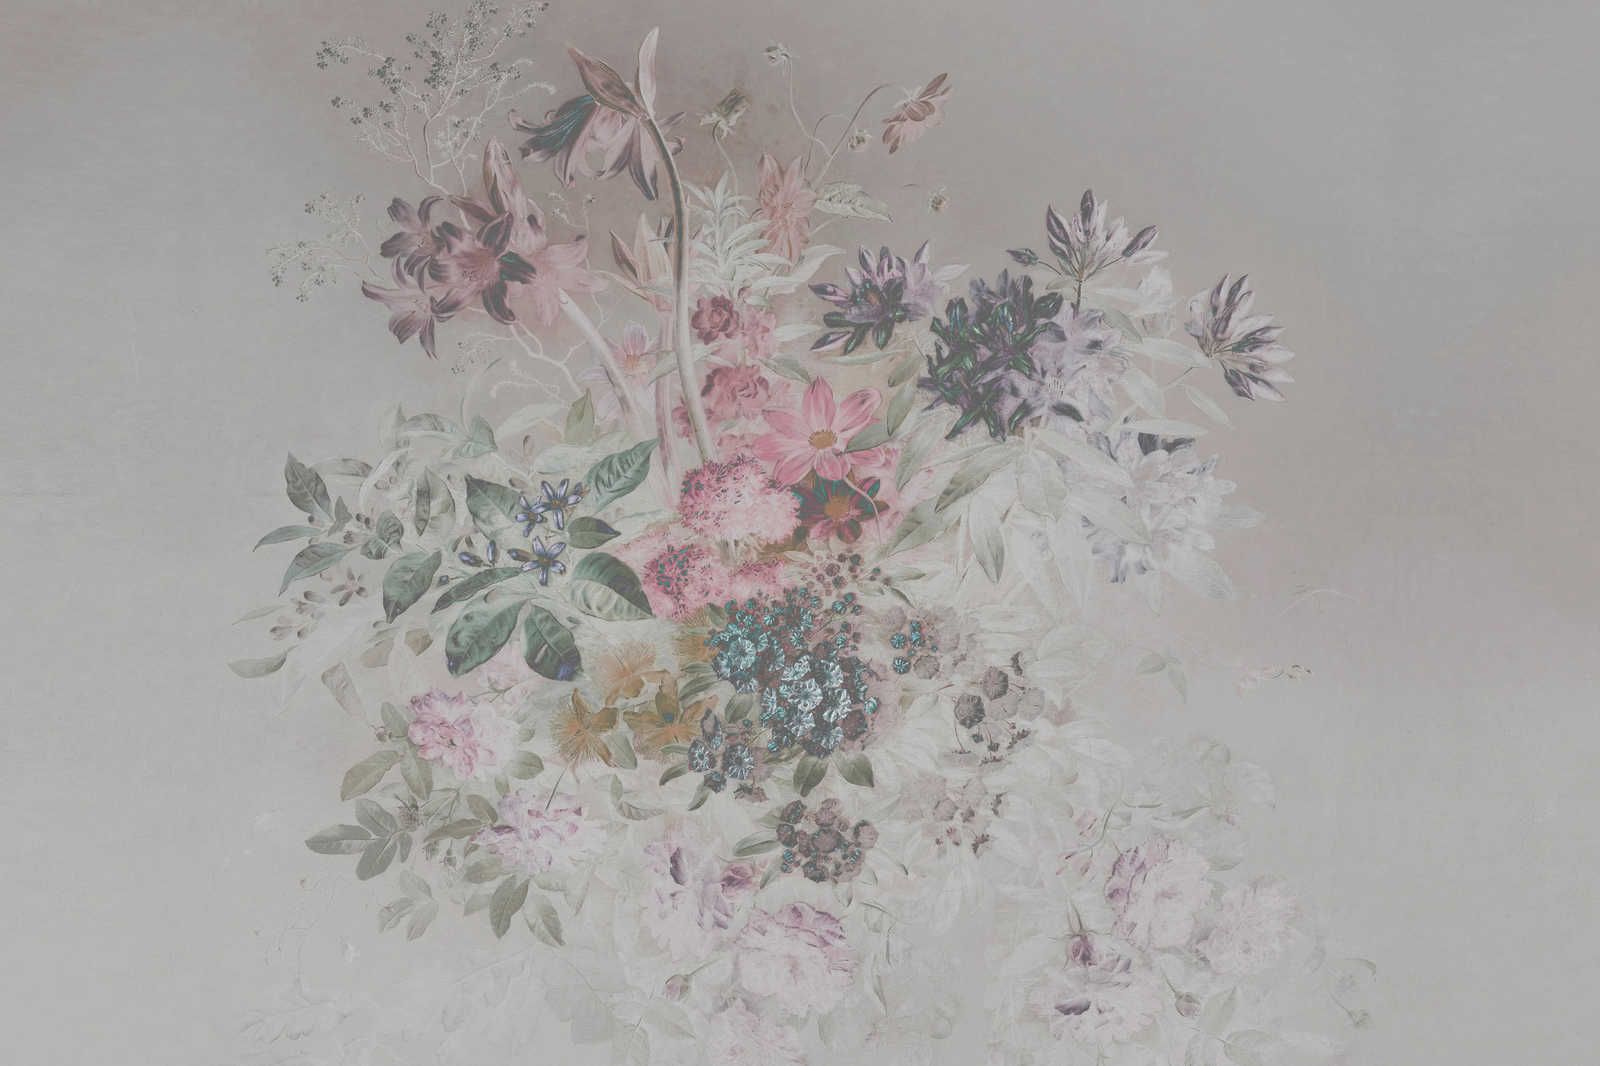             Fleurs sur toile avec design pastel - 0,90 m x 0,60 m
        